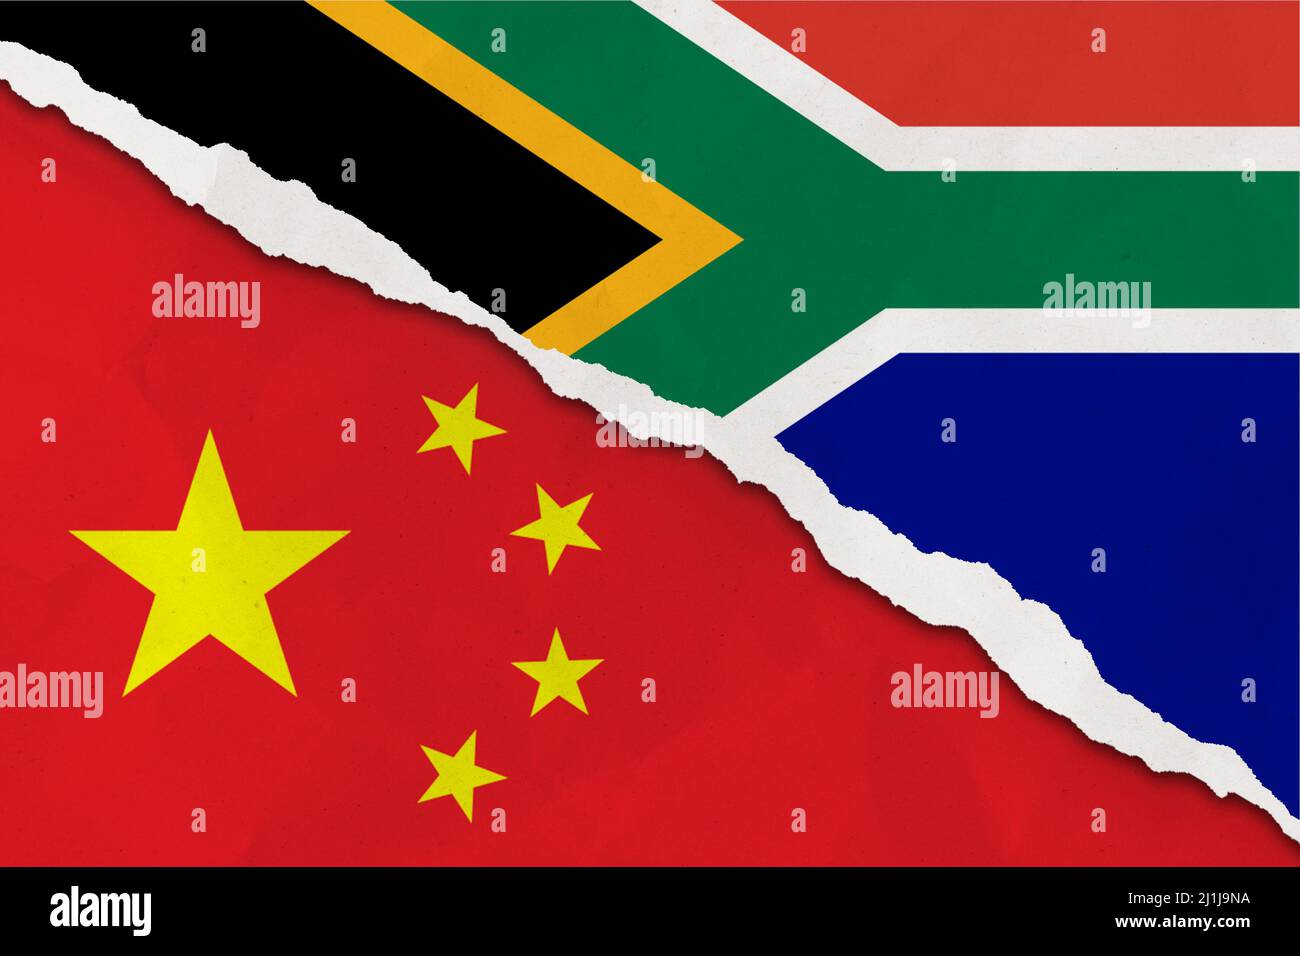 Le drapeau de la Chine et de l'Afrique du Sud a déchiré le papier grince fond. Résumé Chine et Afrique du Sud économie, politique conflits, concept de guerre texture backgro Banque D'Images